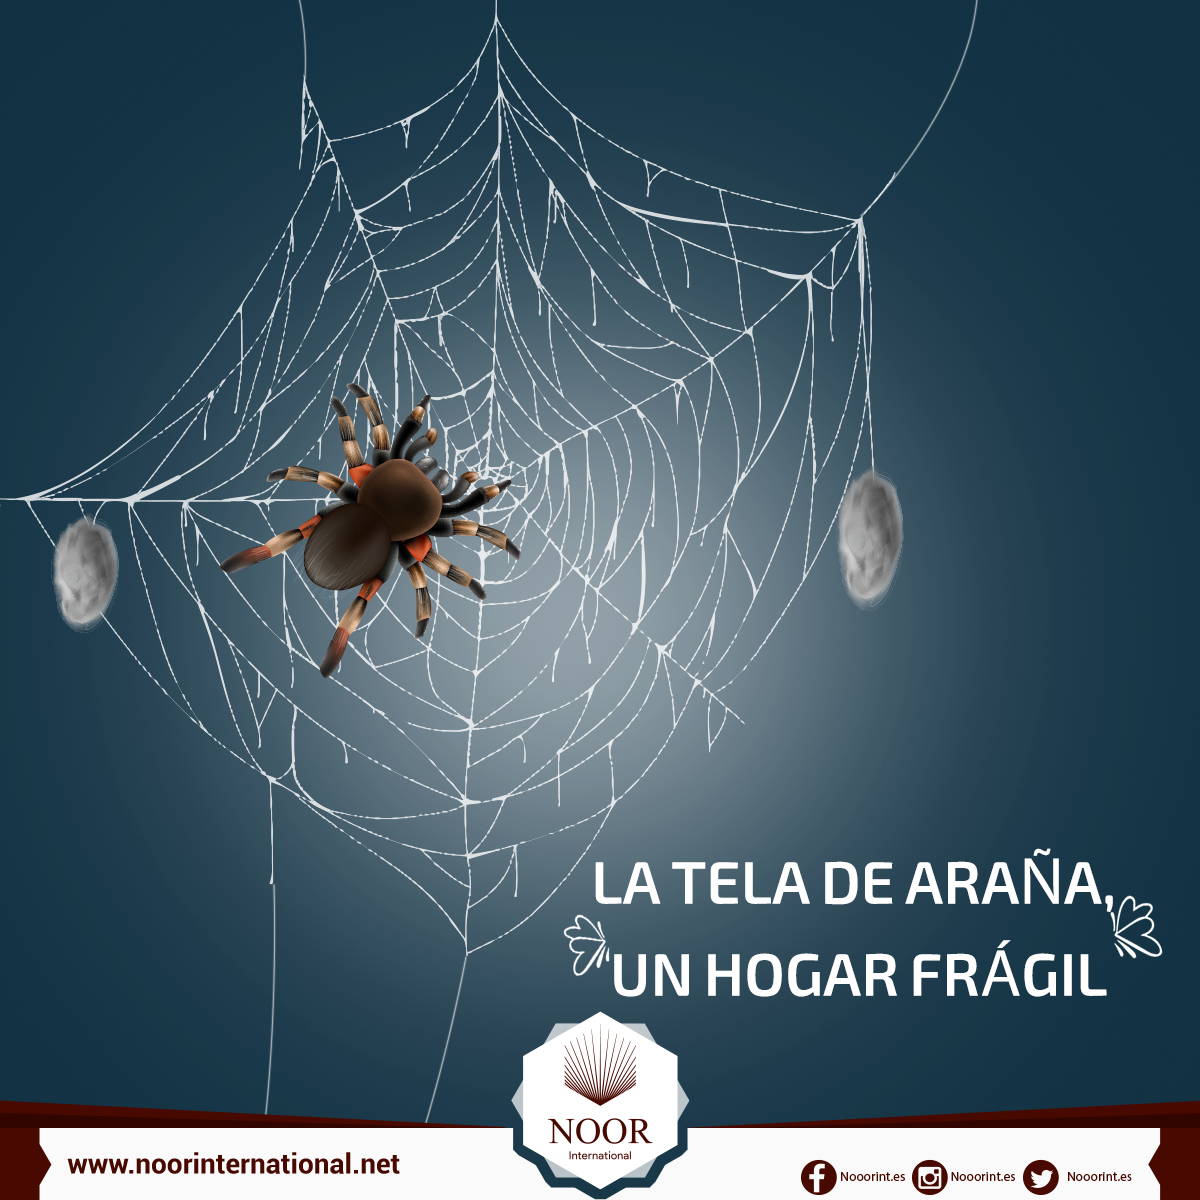 La tela de araña, un hogar frágil